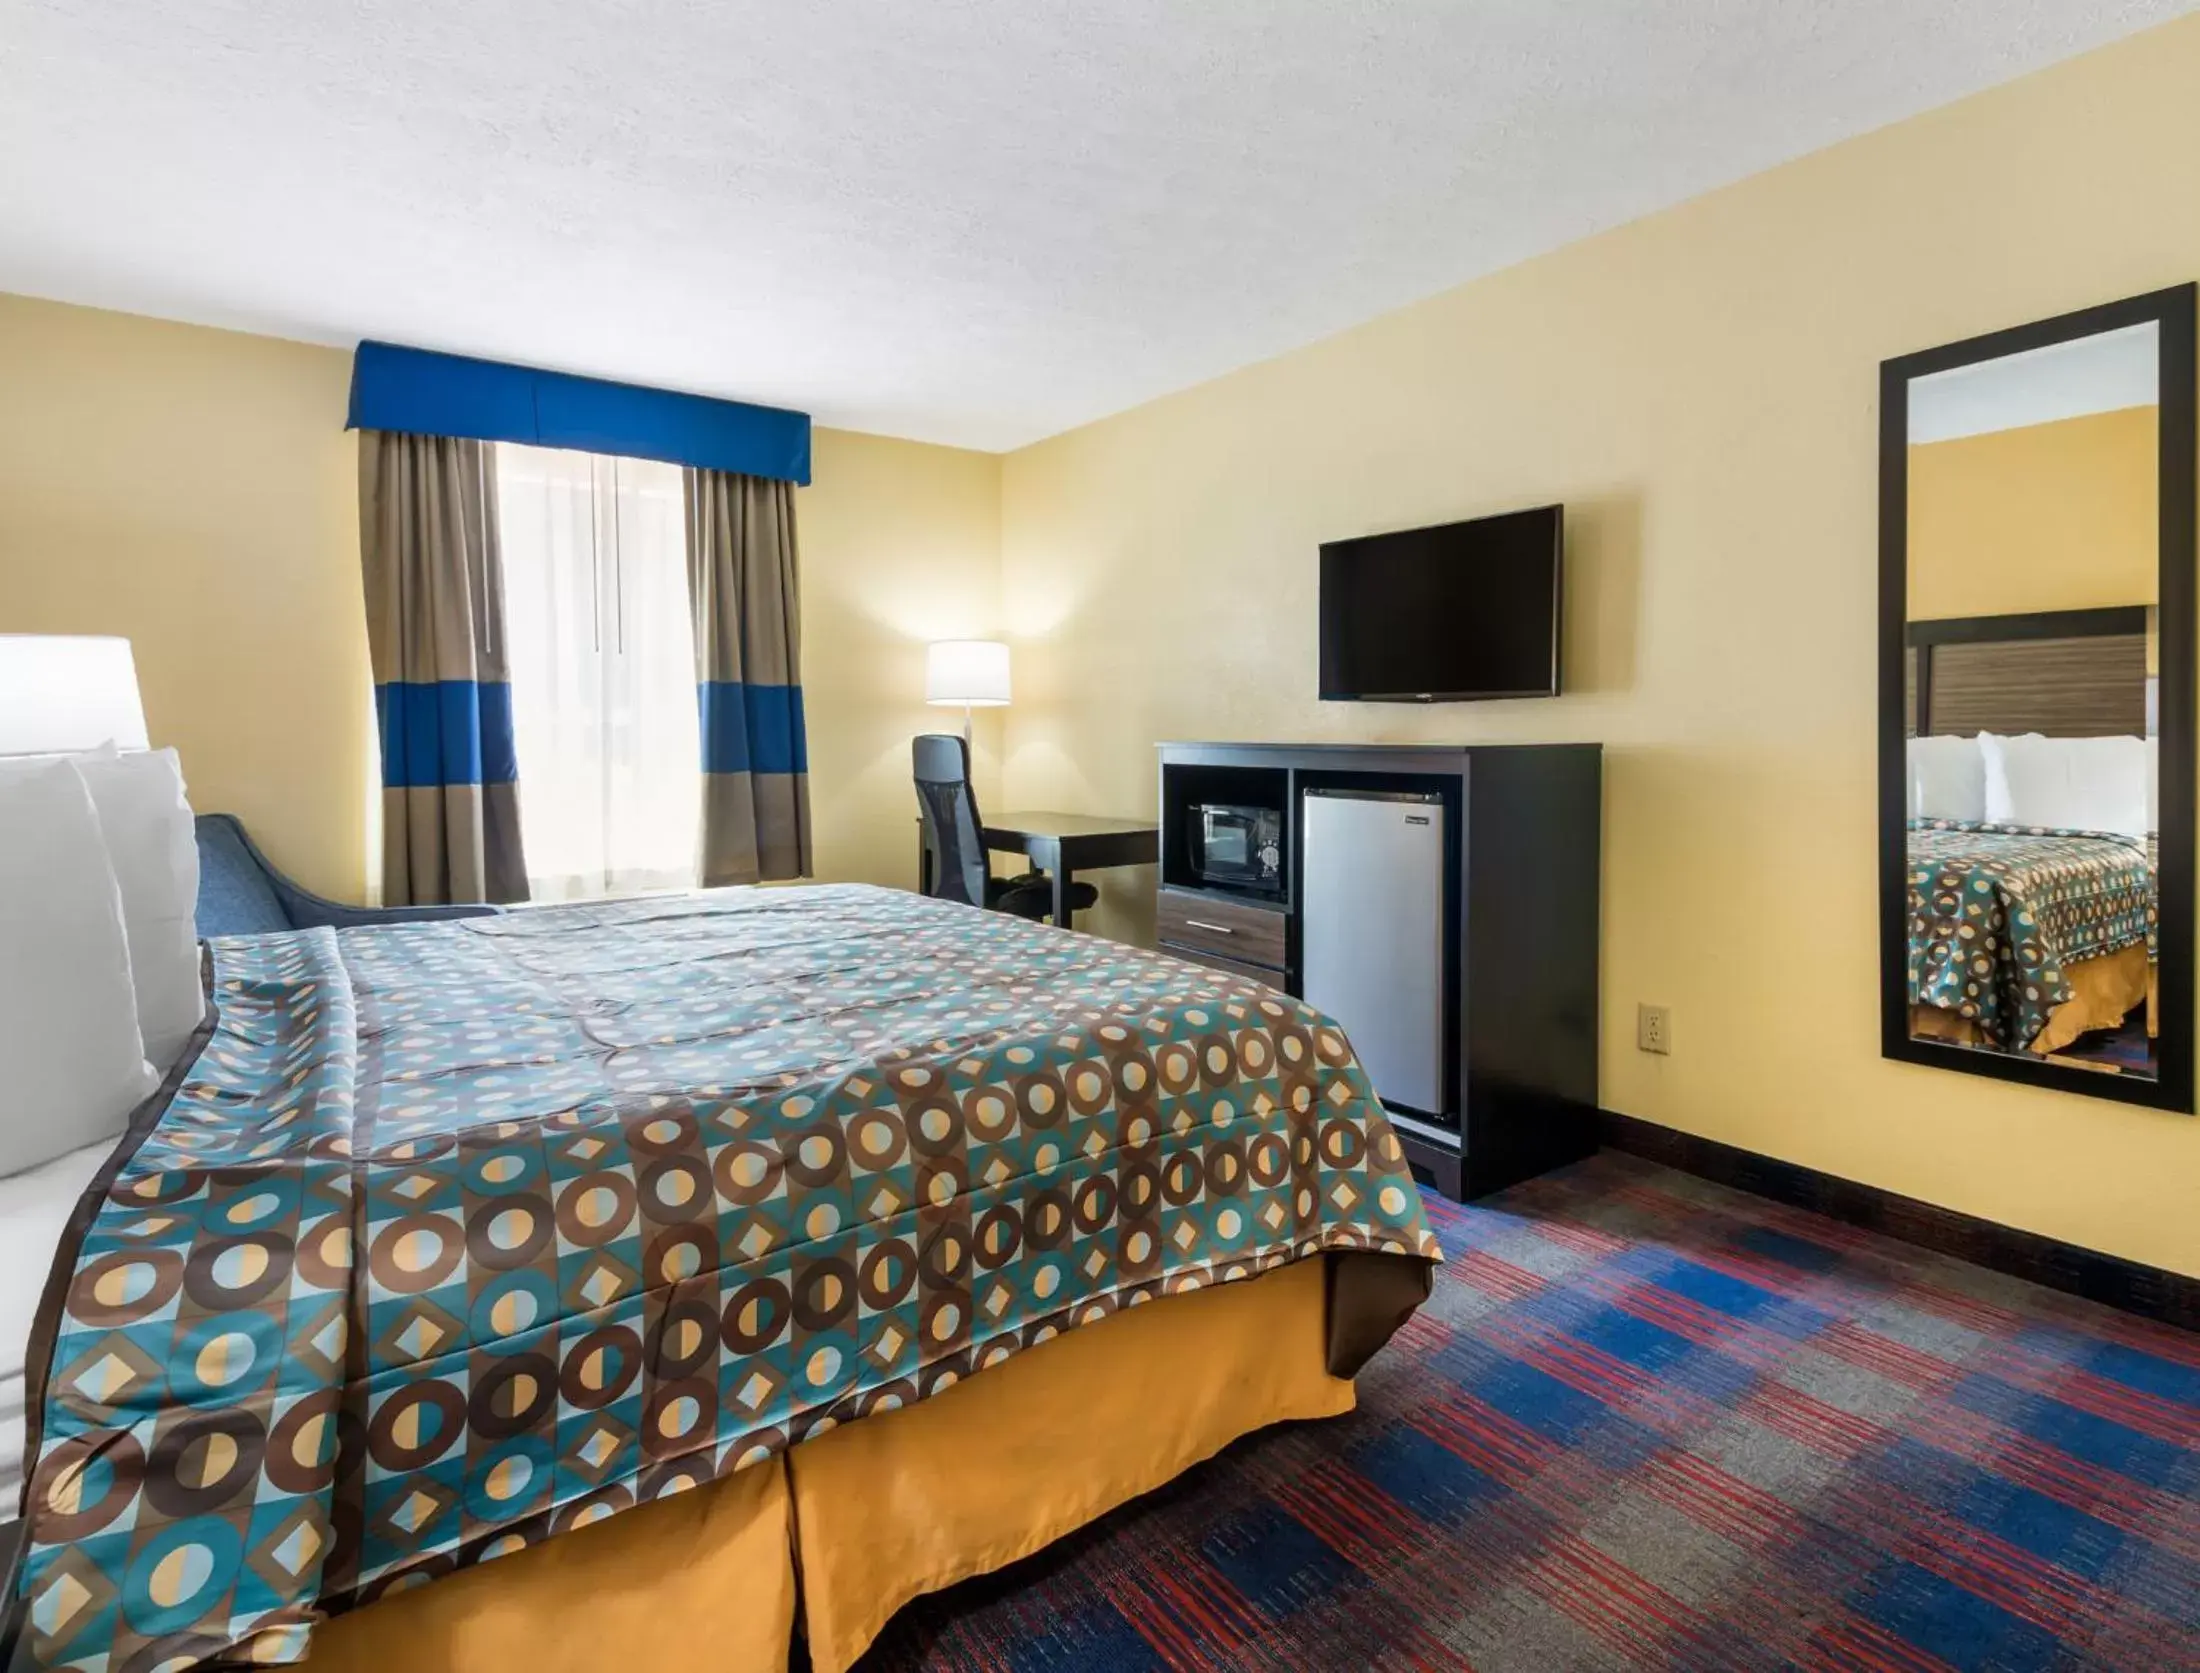 Bedroom, Bed in Americas Best Value Inn - Clayton